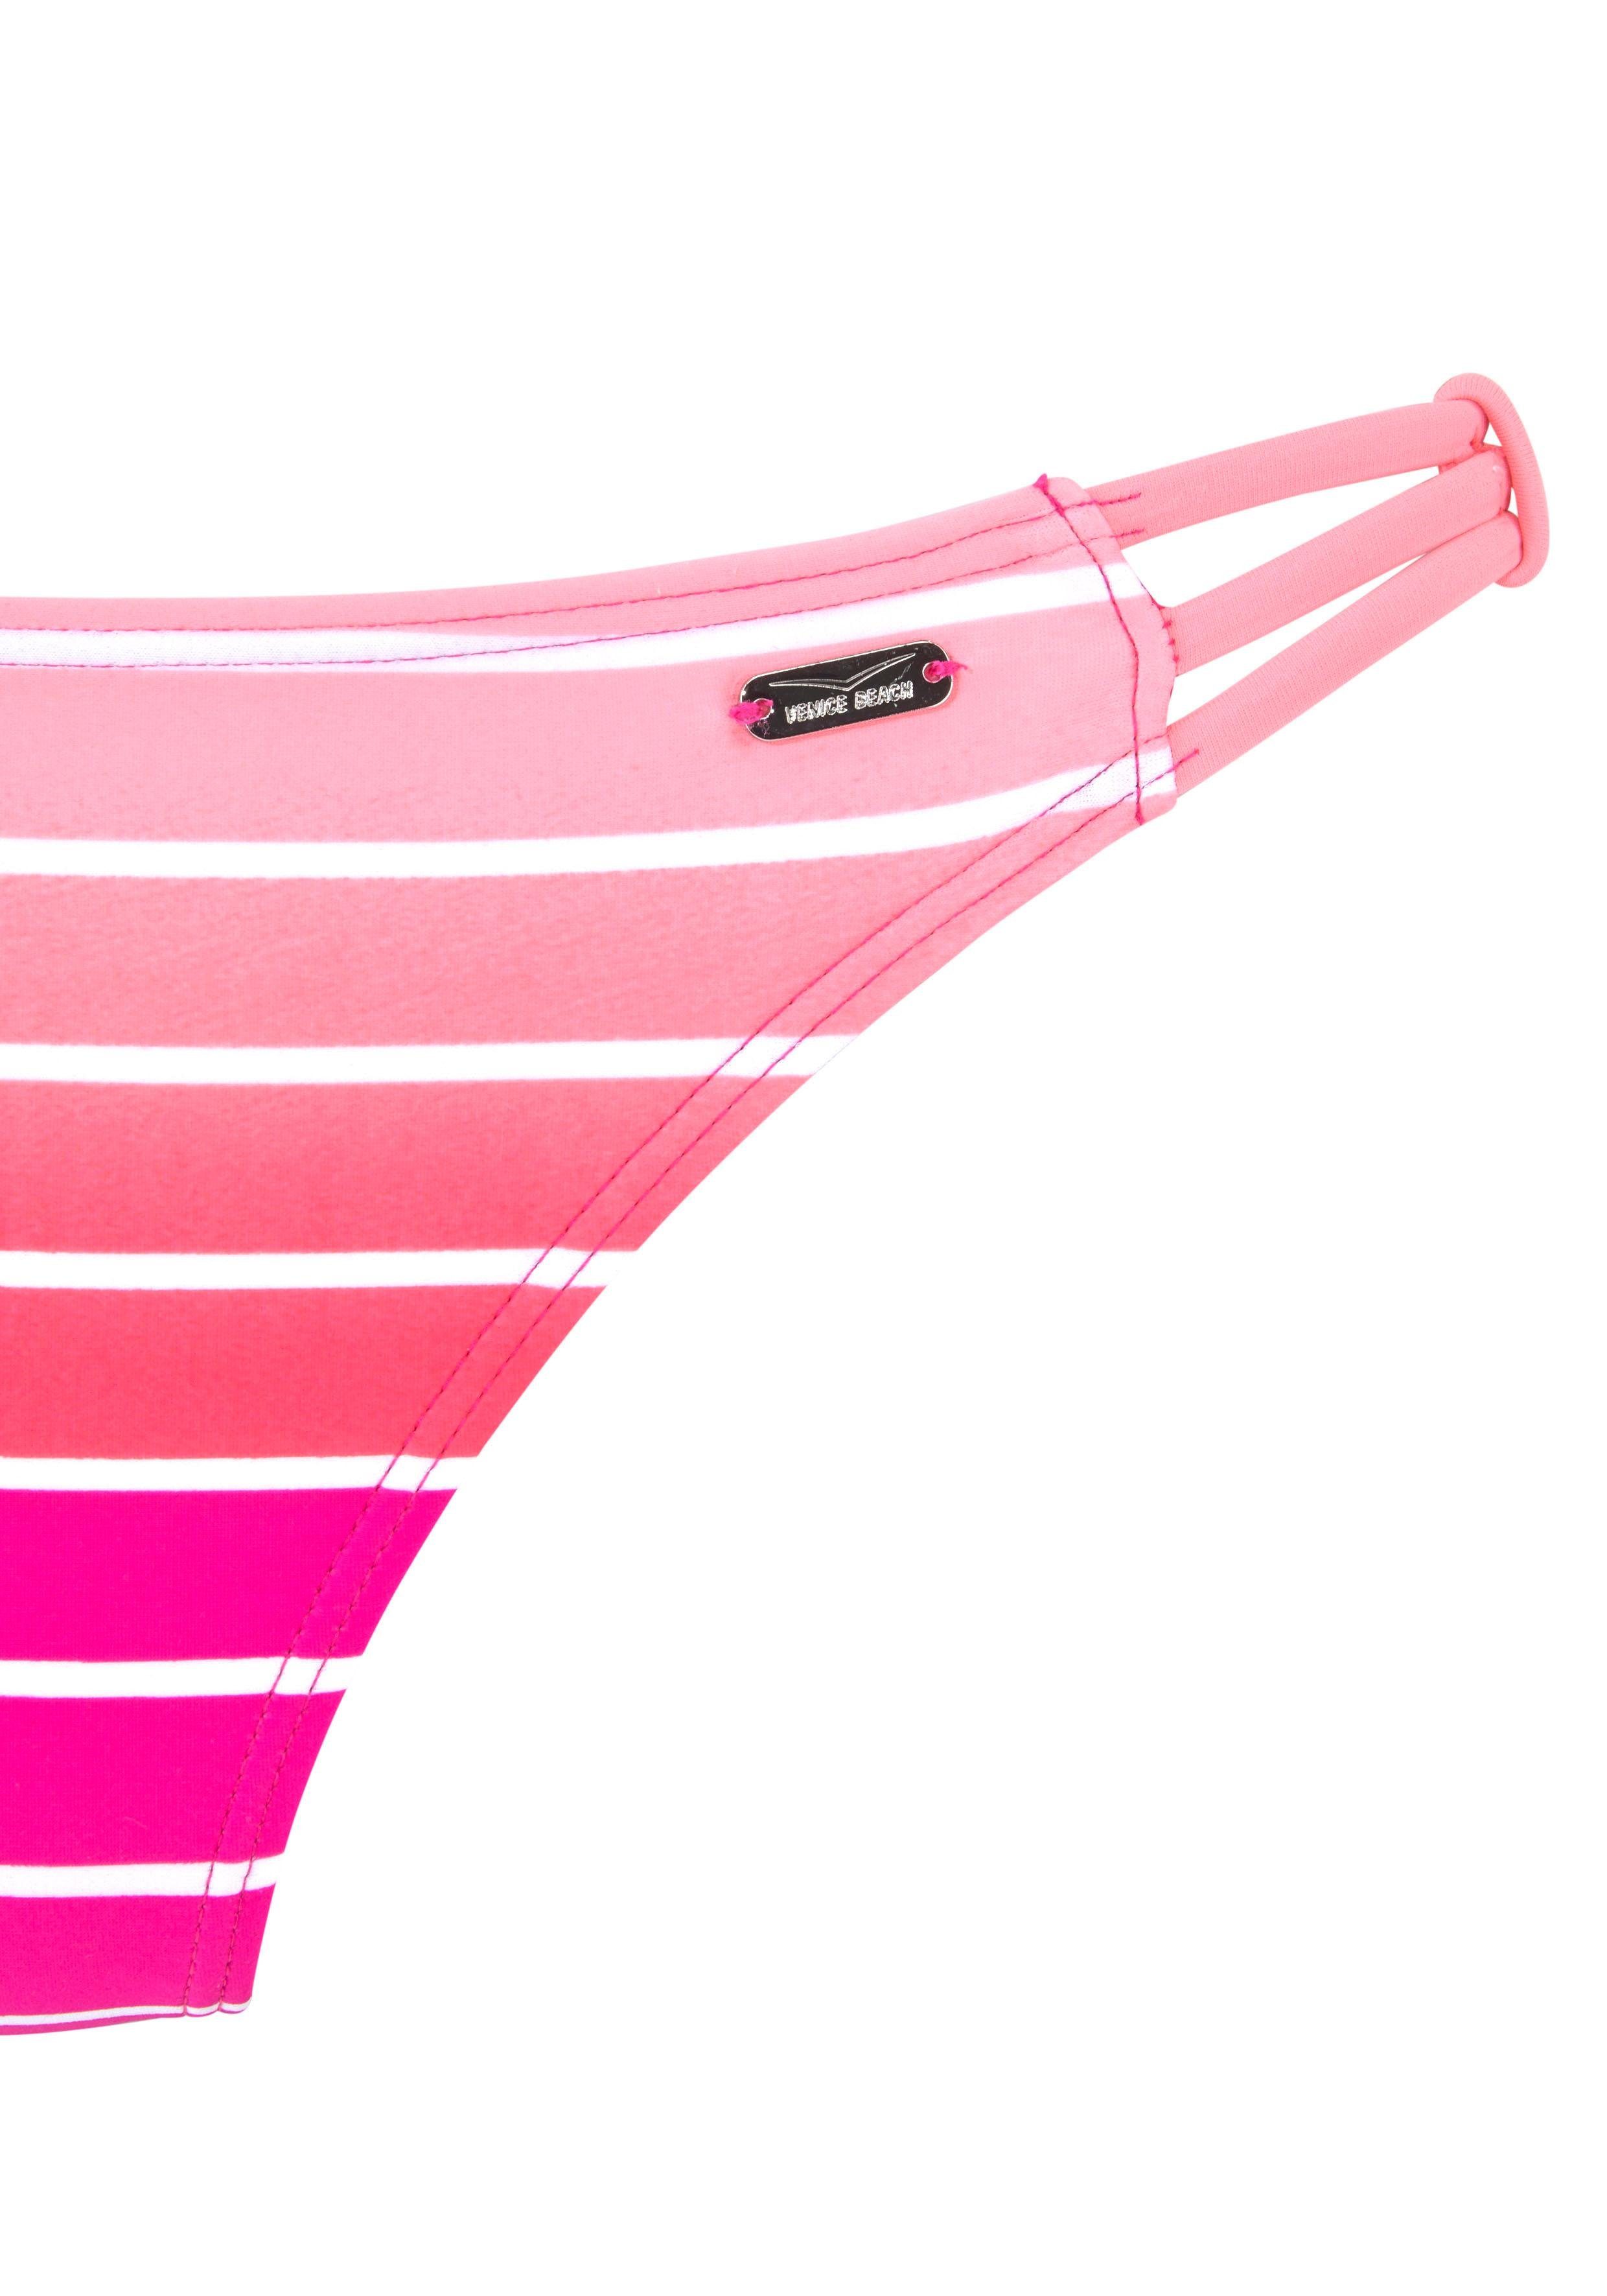 Venice Beach Bandeau-Bikini mit Farbverlauf pink-gestreift